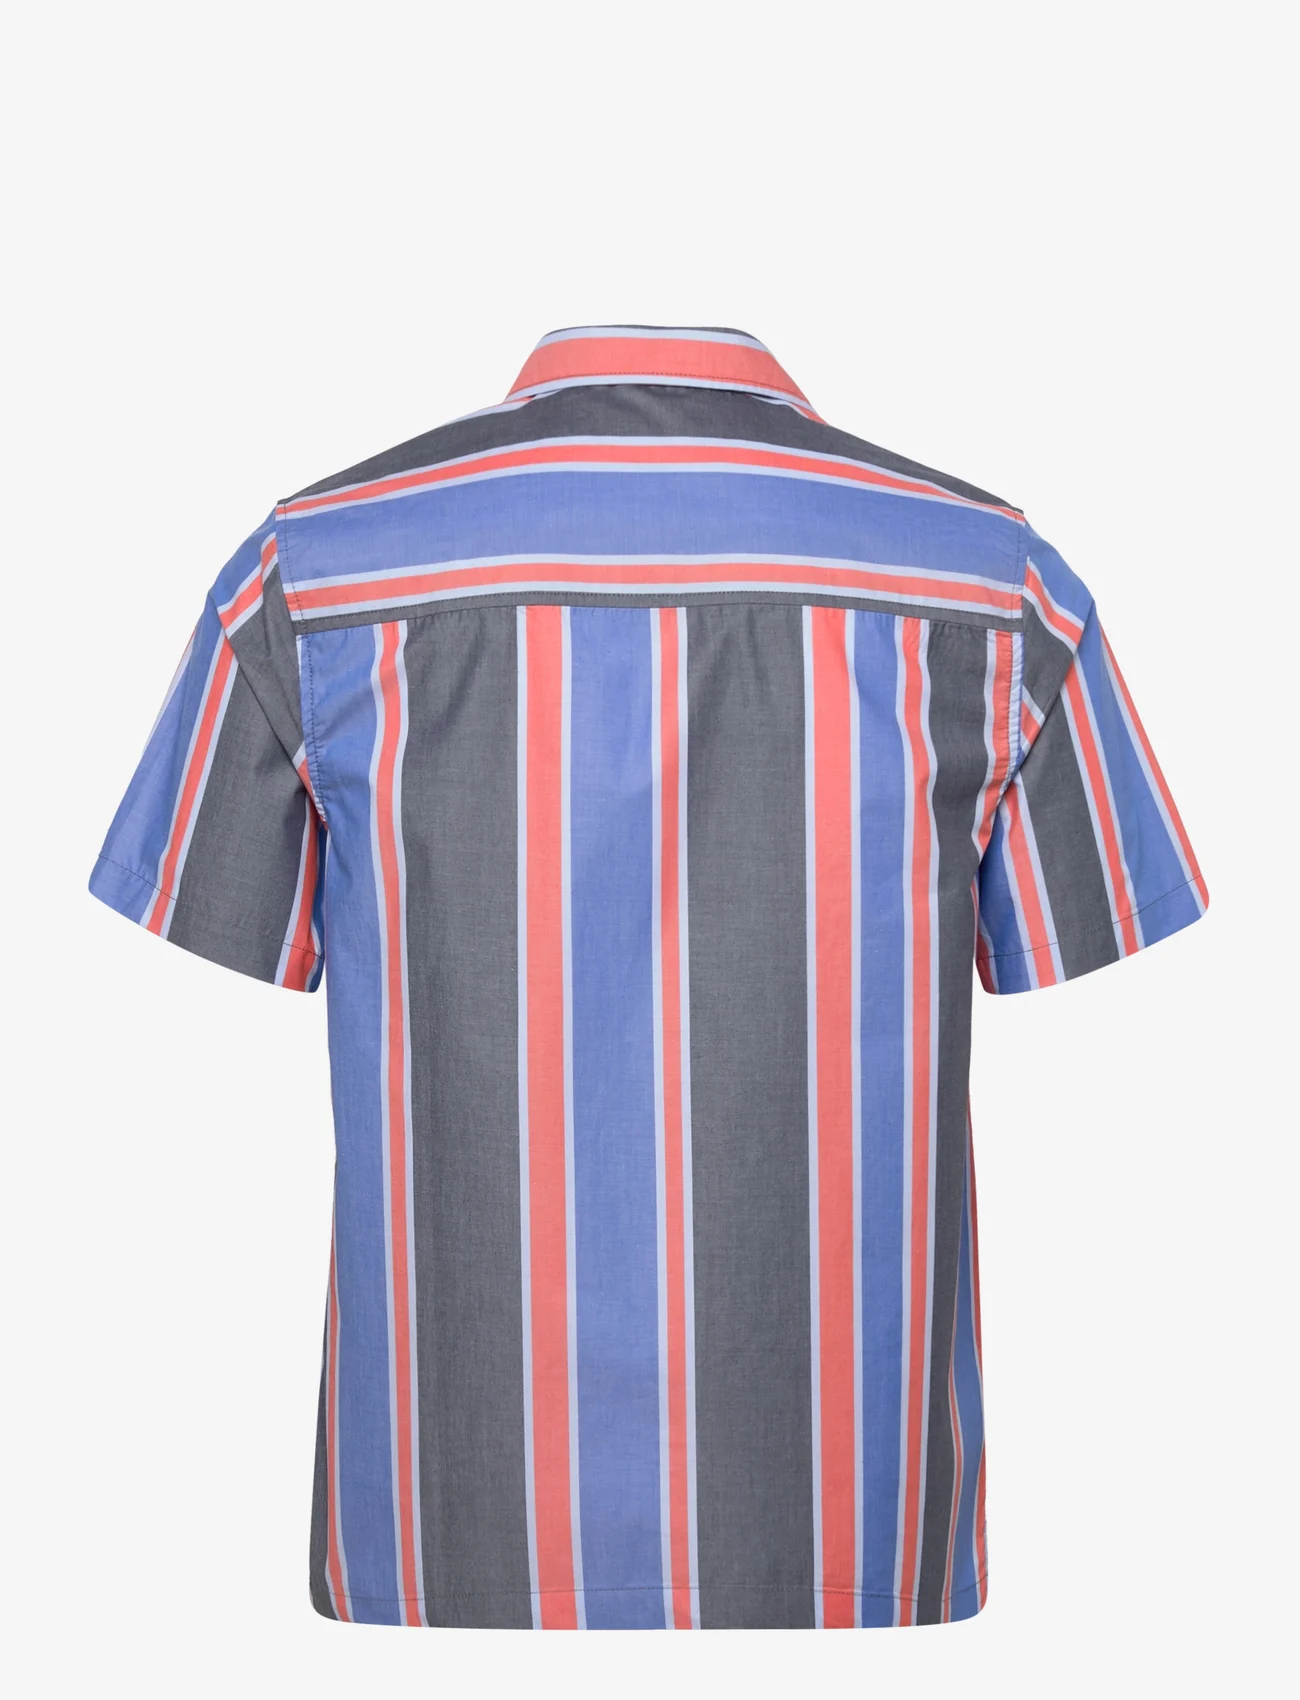 Lyle & Scott - Vertical Stripe Resort Shirt - lyhythihaiset kauluspaidat - flyer red/ spring blue - 1